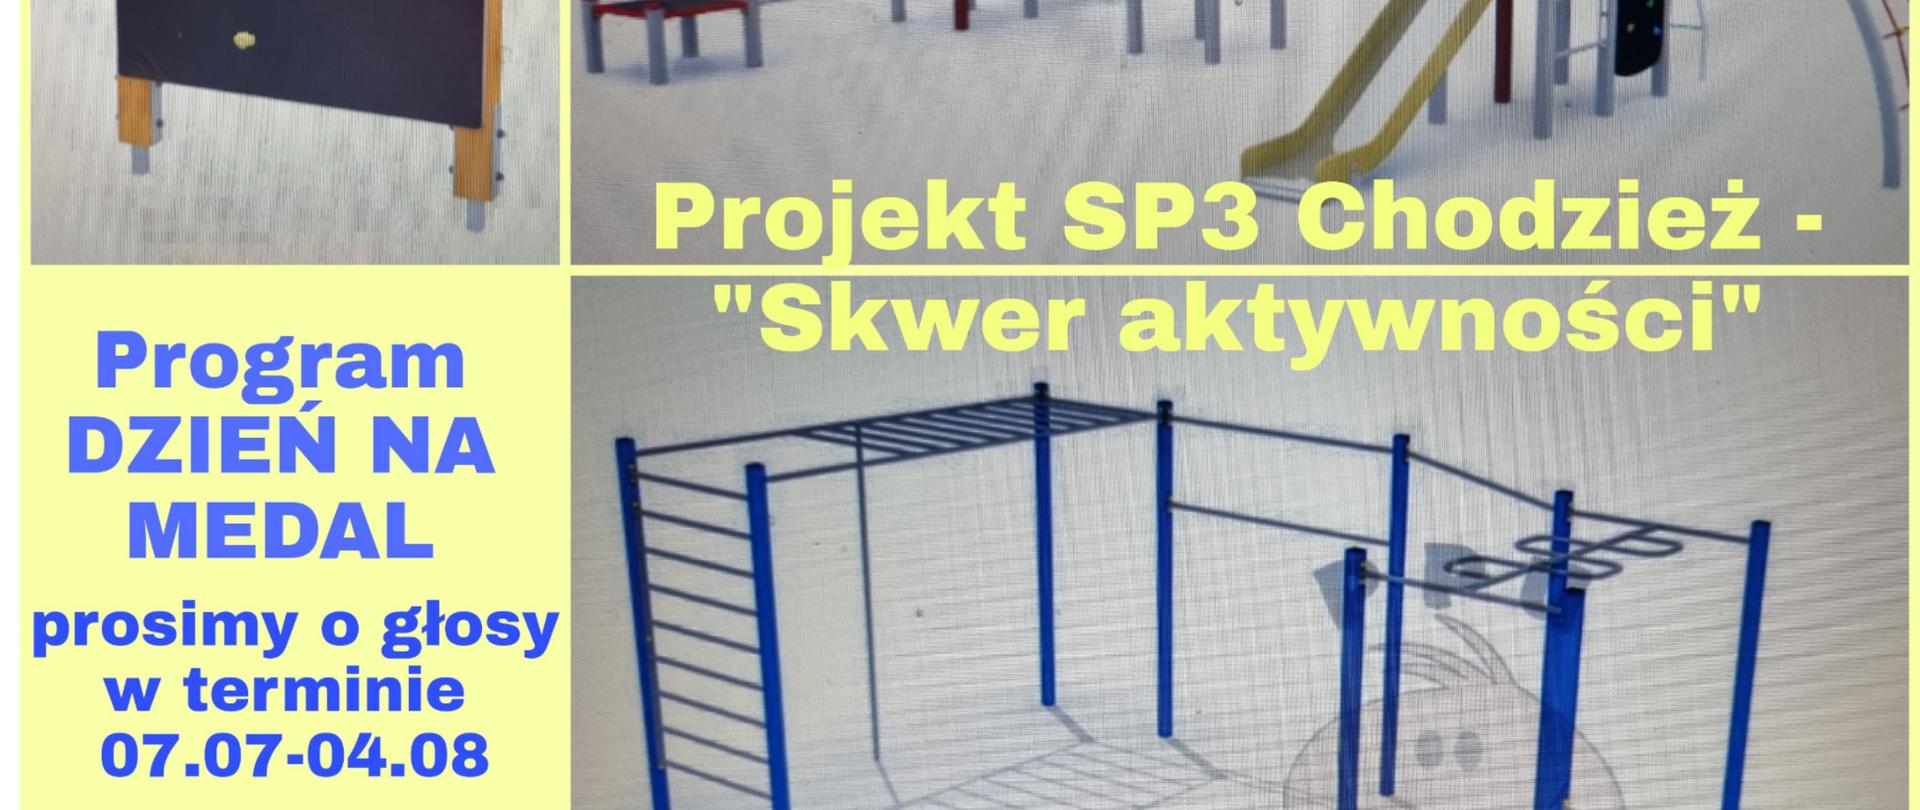 Plakat projektu SP3 "Skwer aktywności"